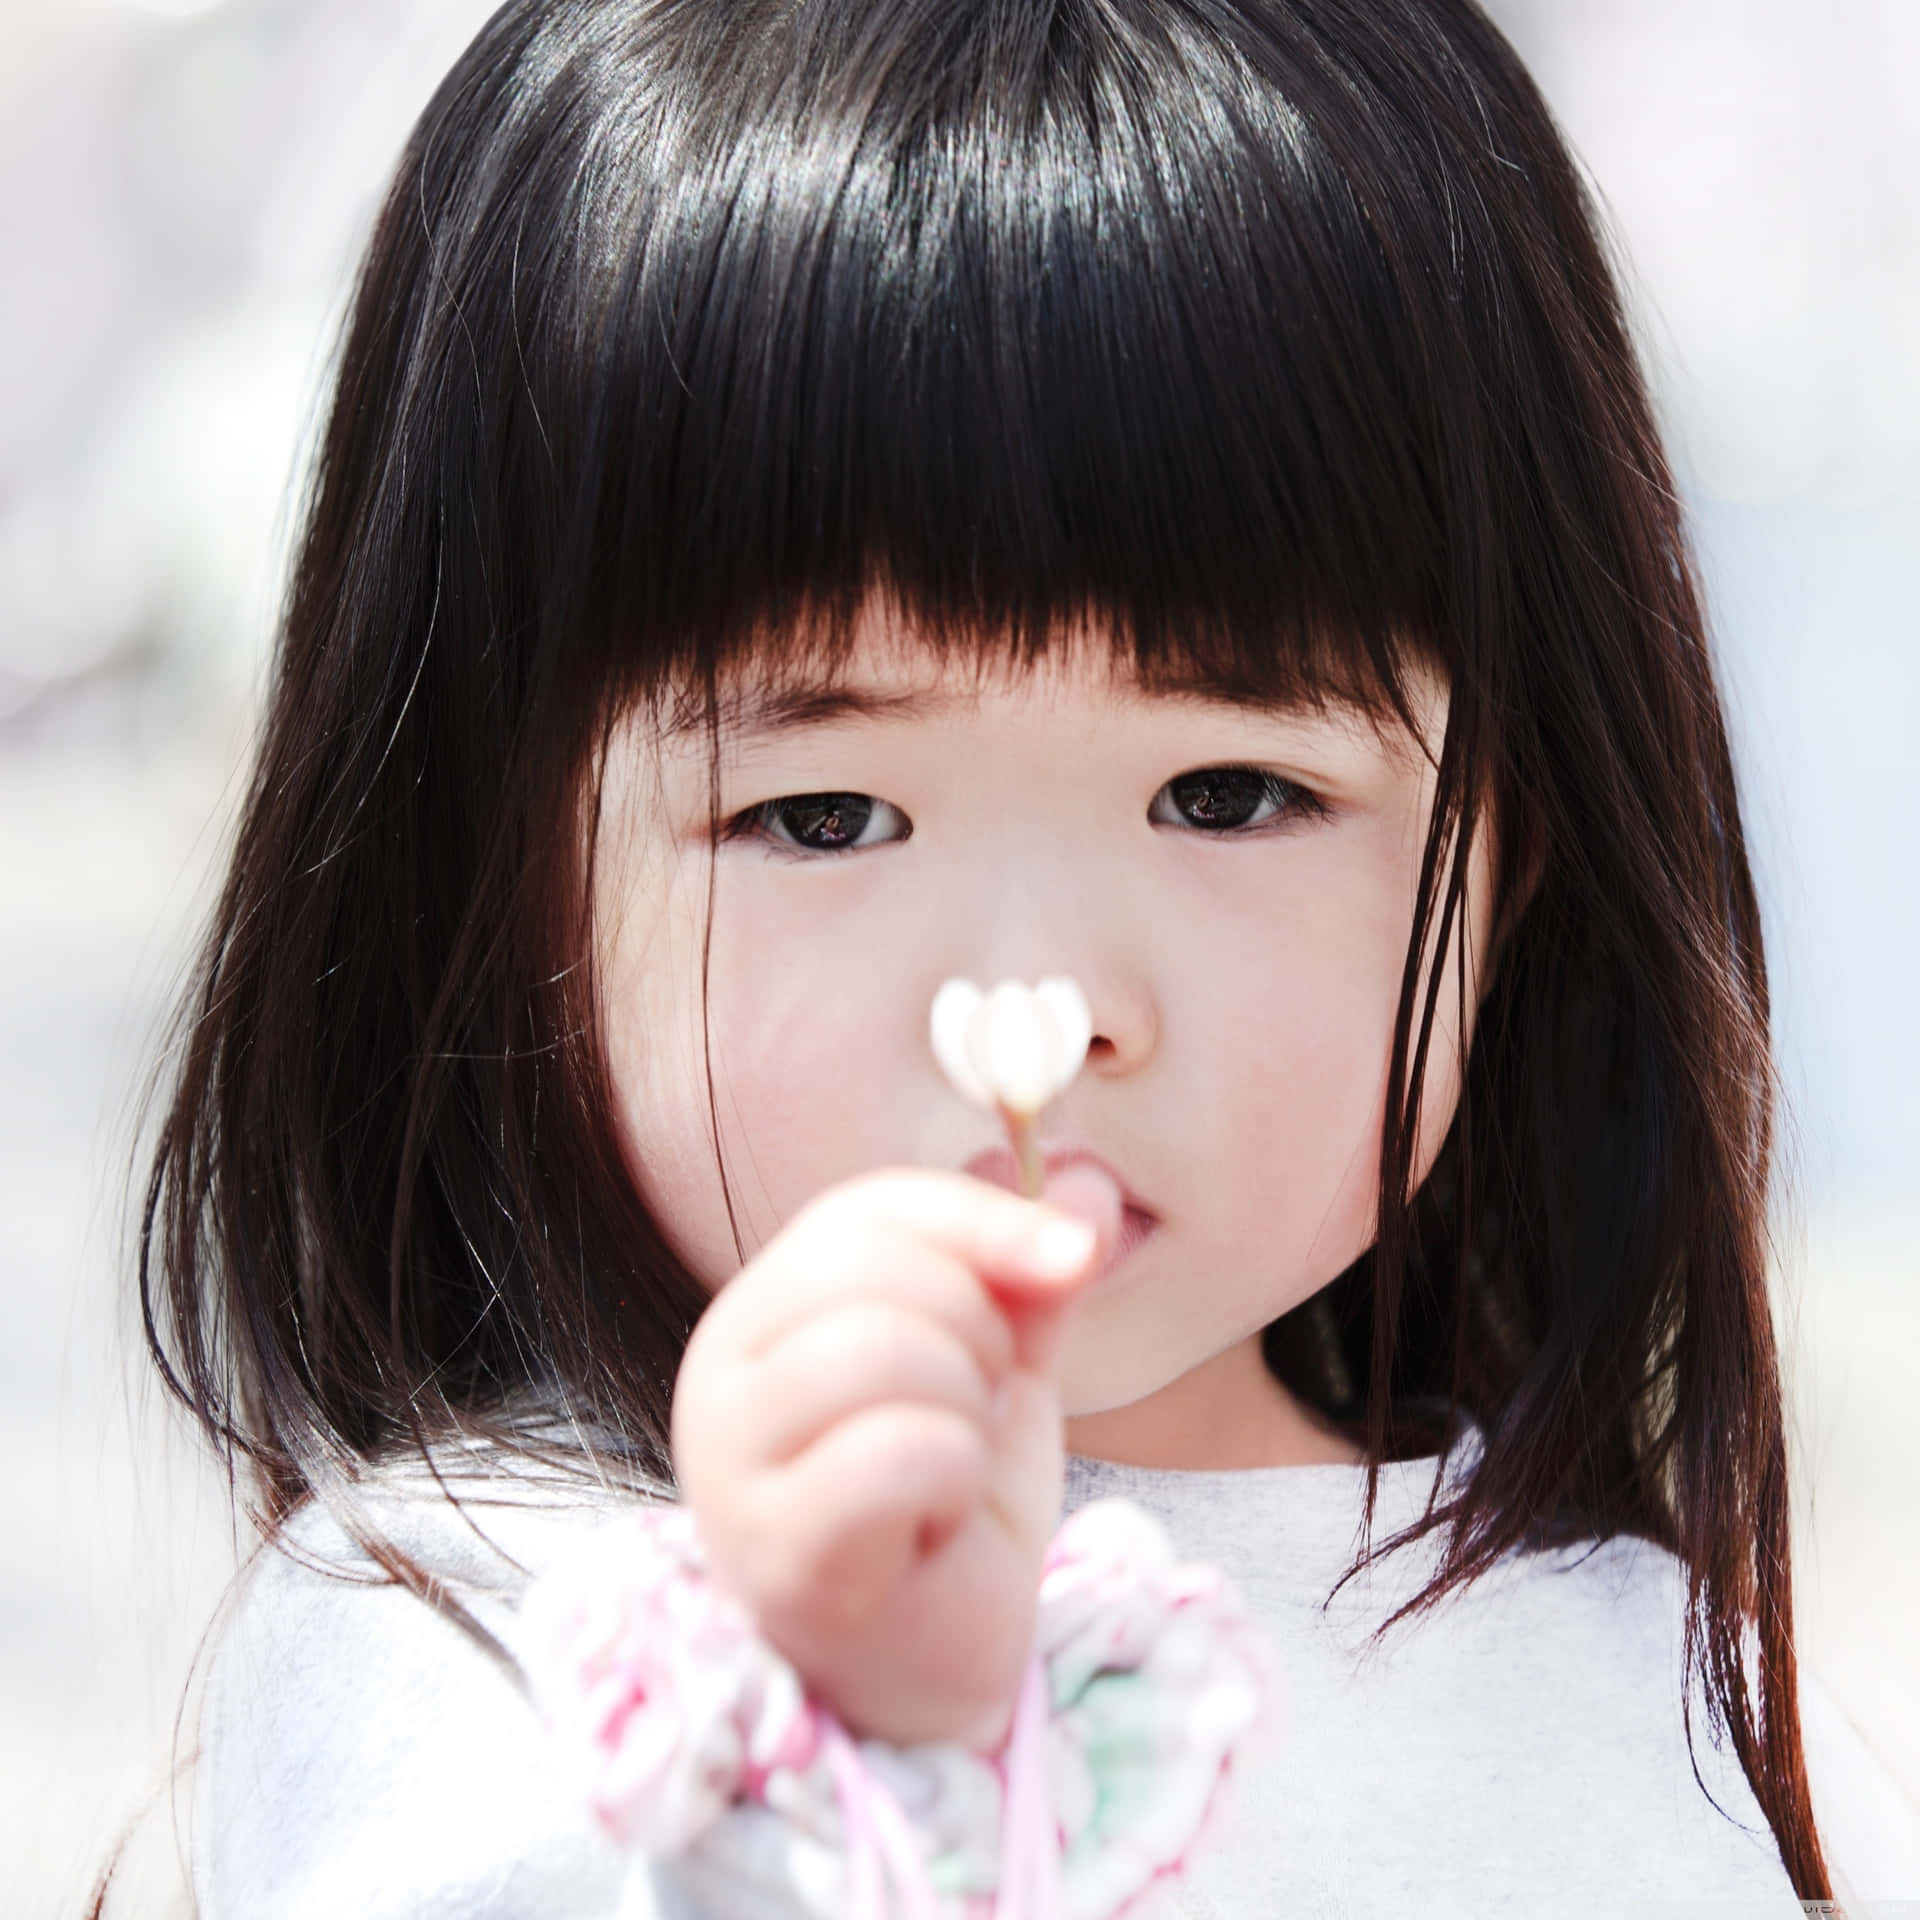 Little Girl Holding Flower Closeup Wallpaper